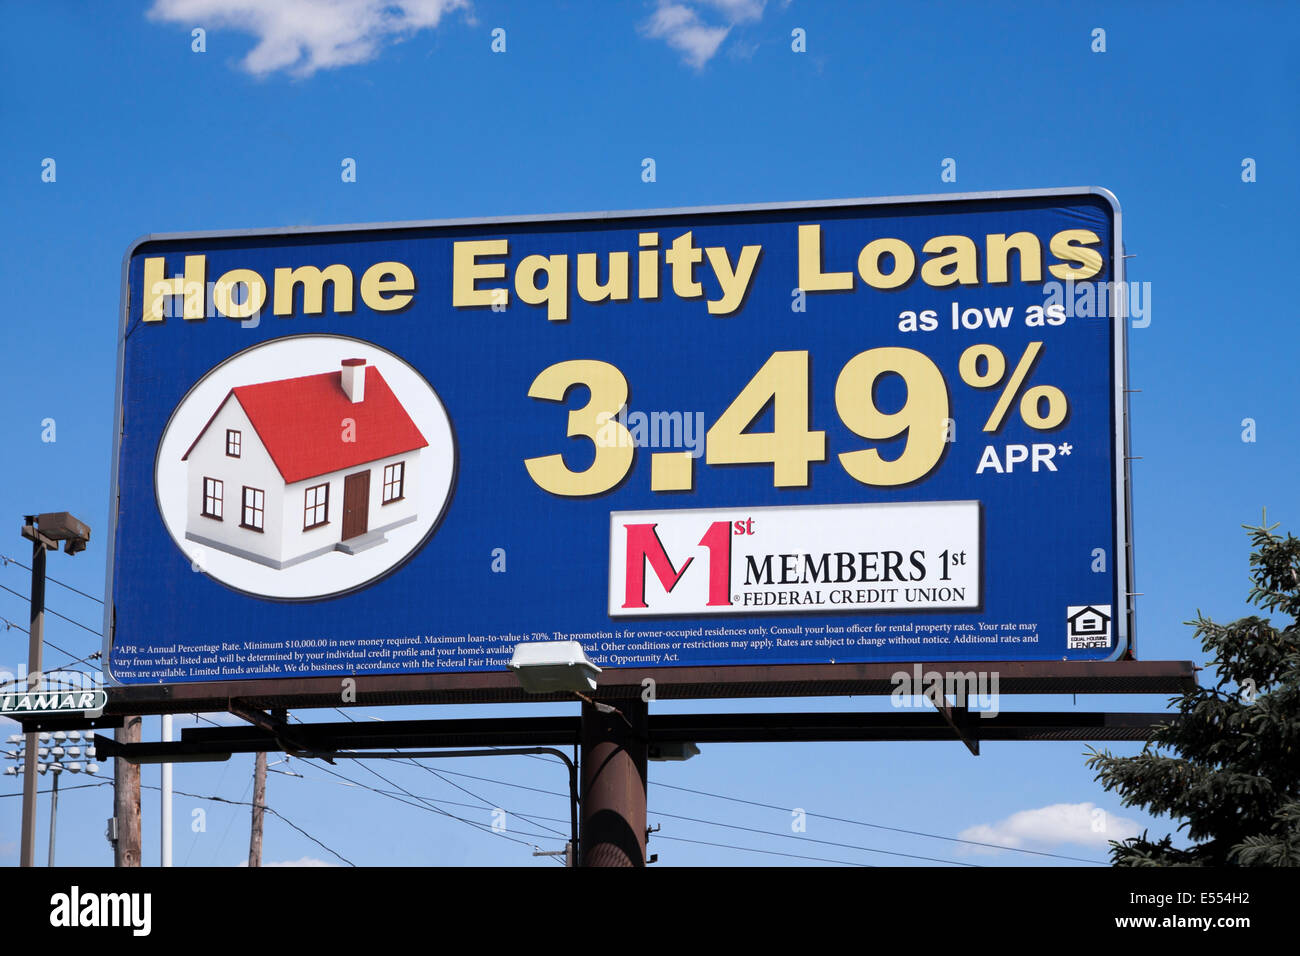 Plakat-Zeichen Werbung Hauptbilligkeitsdarlehen über Mitglieder 1. Federal Credit Union. Stockfoto